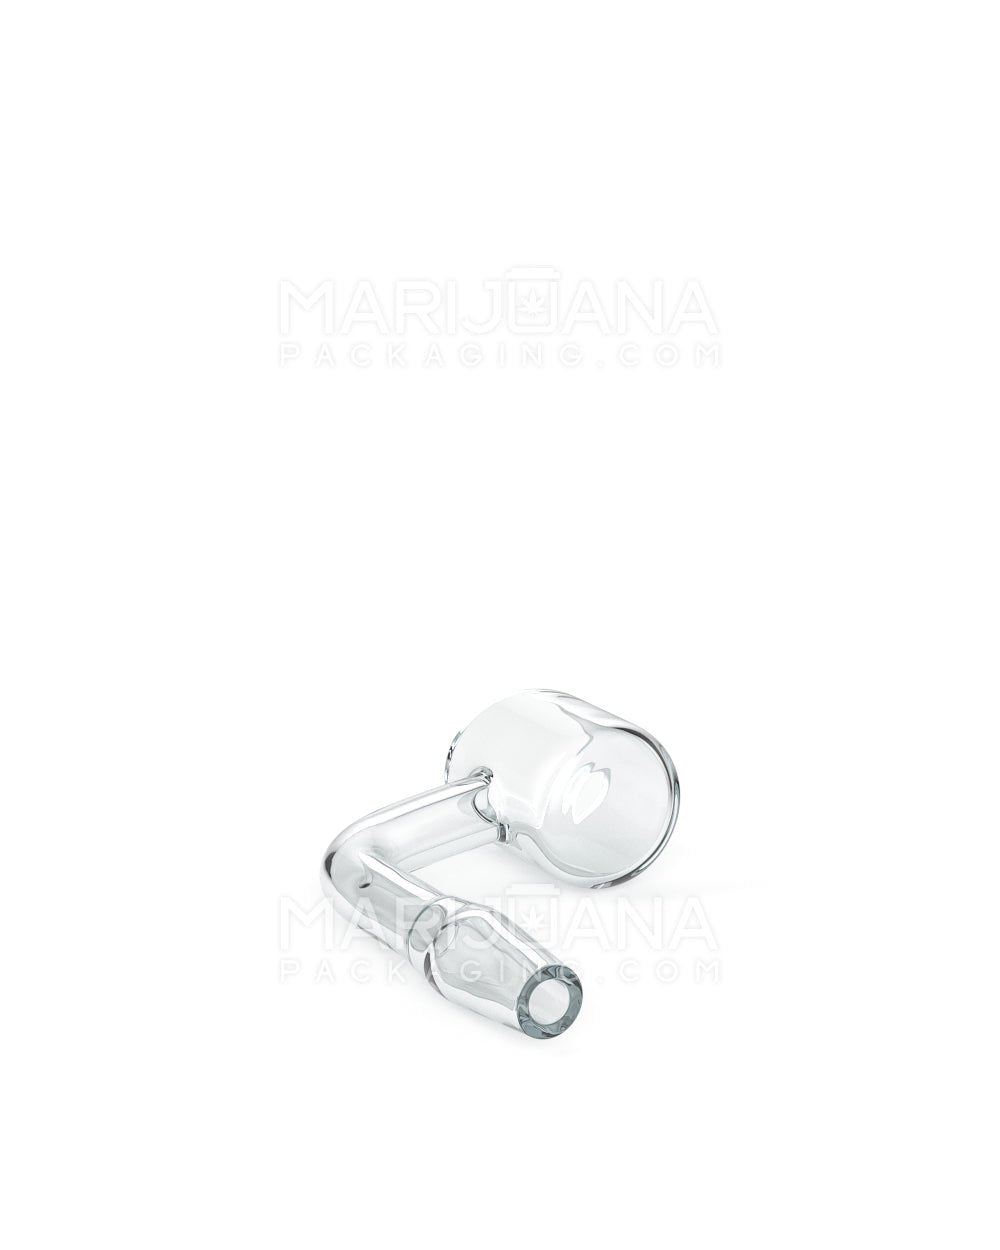 USA Glass | Thick 3.5mm Quartz Banger Nail | 10mm - 90 Degree - Male - 5